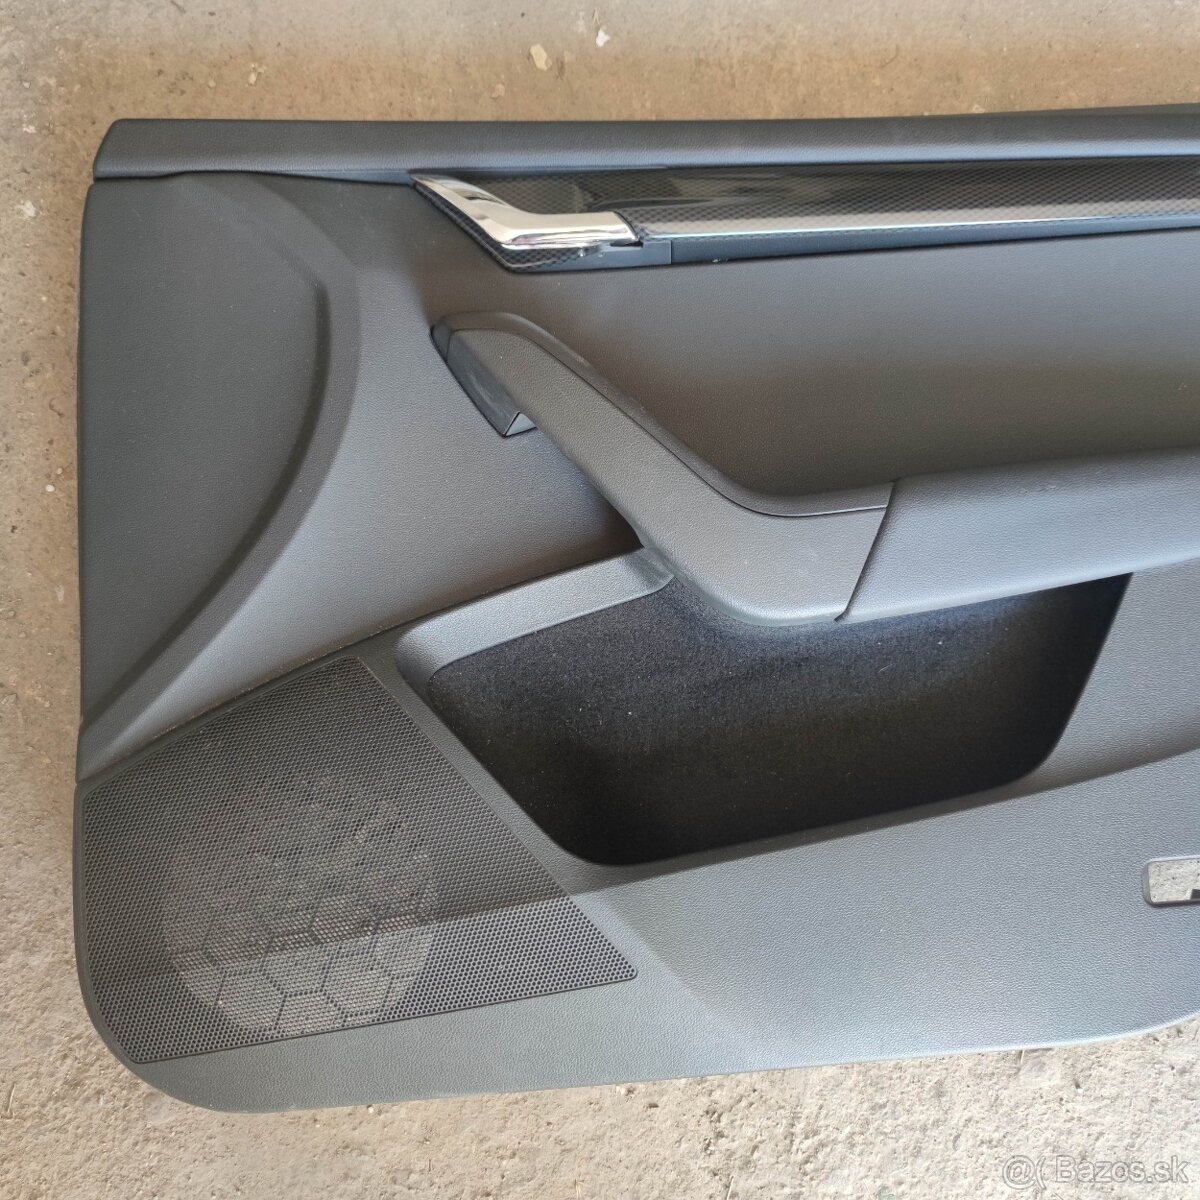 Škoda Octavia 3 RS tapacir predných dverí